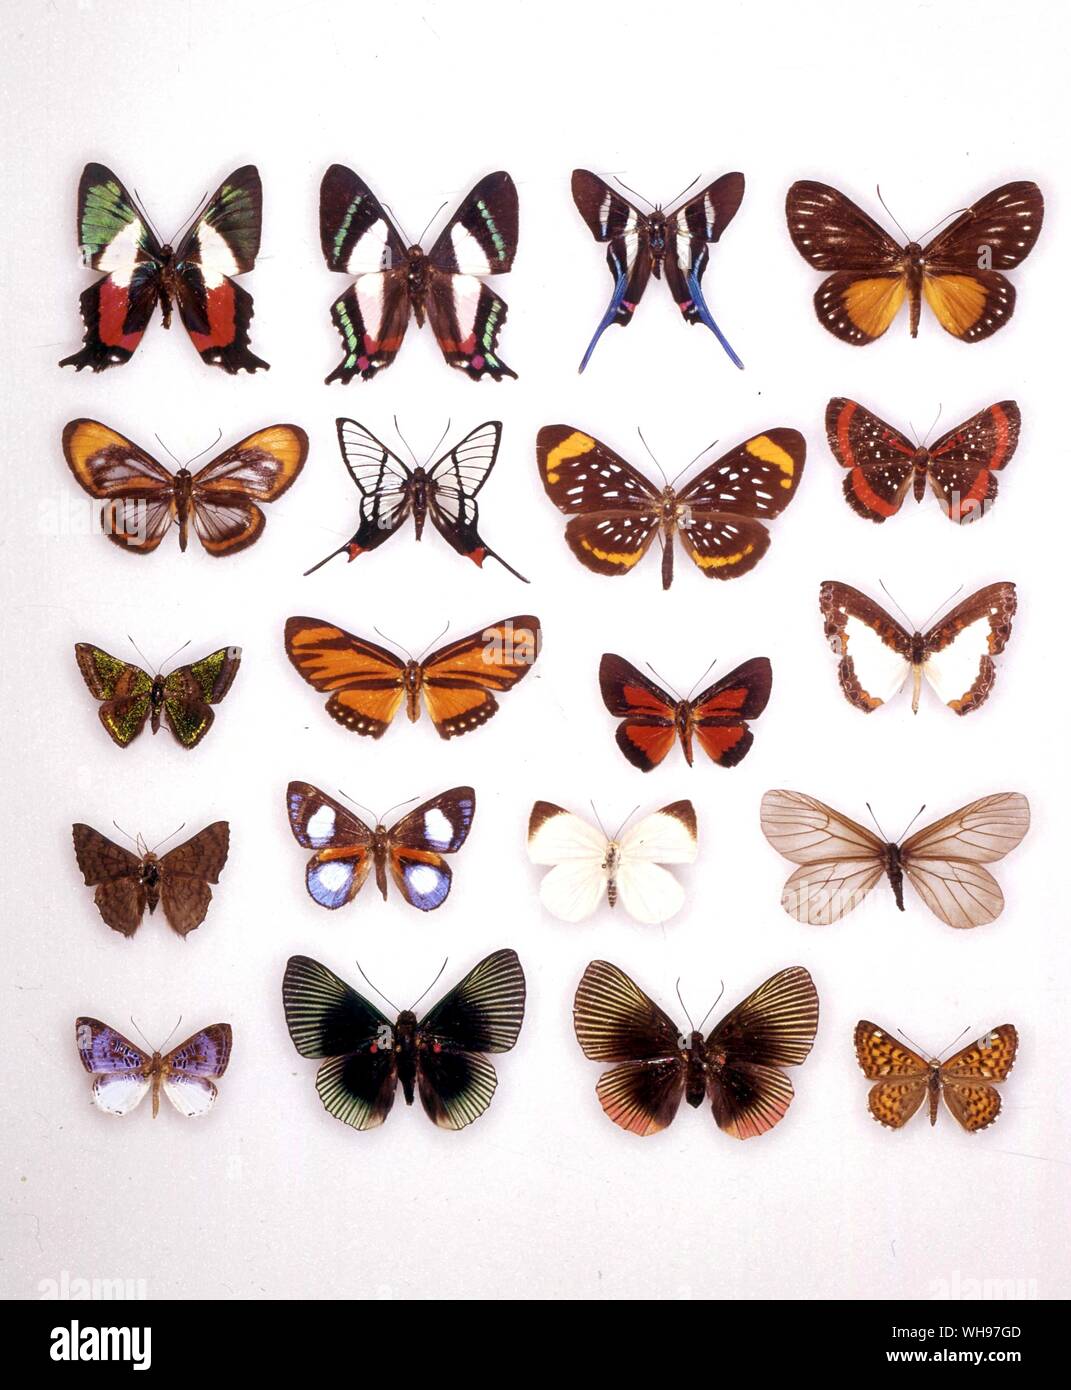 Papillons papillons/- (de gauche à droite) Ancycluris formosissima (dessous), Rhetus arcius Ancycluris, Mira, Ithomeis eulema, Ithomeis corena, Chorinea faunus, Stalachtis euterpe, Amarynthis meneria, Caria mantinea, Esthemopsis thyatire (femelle), Esthemopsis thyatire (mâle), Nymphidium, onaeum Polystichtis Lasaia sessilis, siaka, Theope pieridoides, Styx infernalis, Echenais alector, Lyropteryx apollonia (mâle), Lyropteryx apollonia (femelle), l'Apodemia nais Banque D'Images